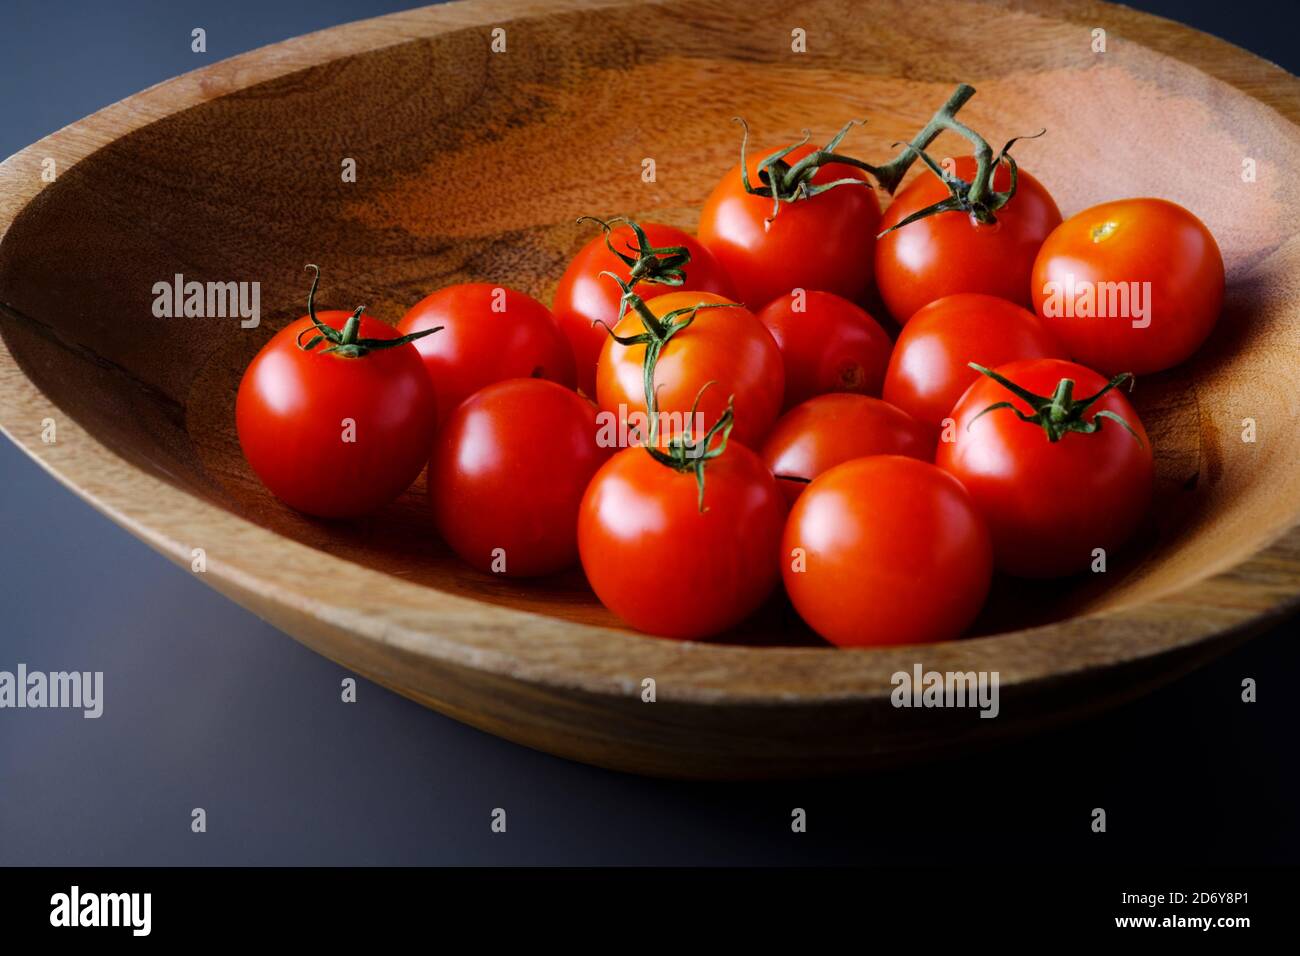 Petites tomates rouges fraîches, mûres, Solanum lycopersicum, dans un bol en bois. Une source saine de vitamine C, de potassium, de folate et de vitamine K Banque D'Images